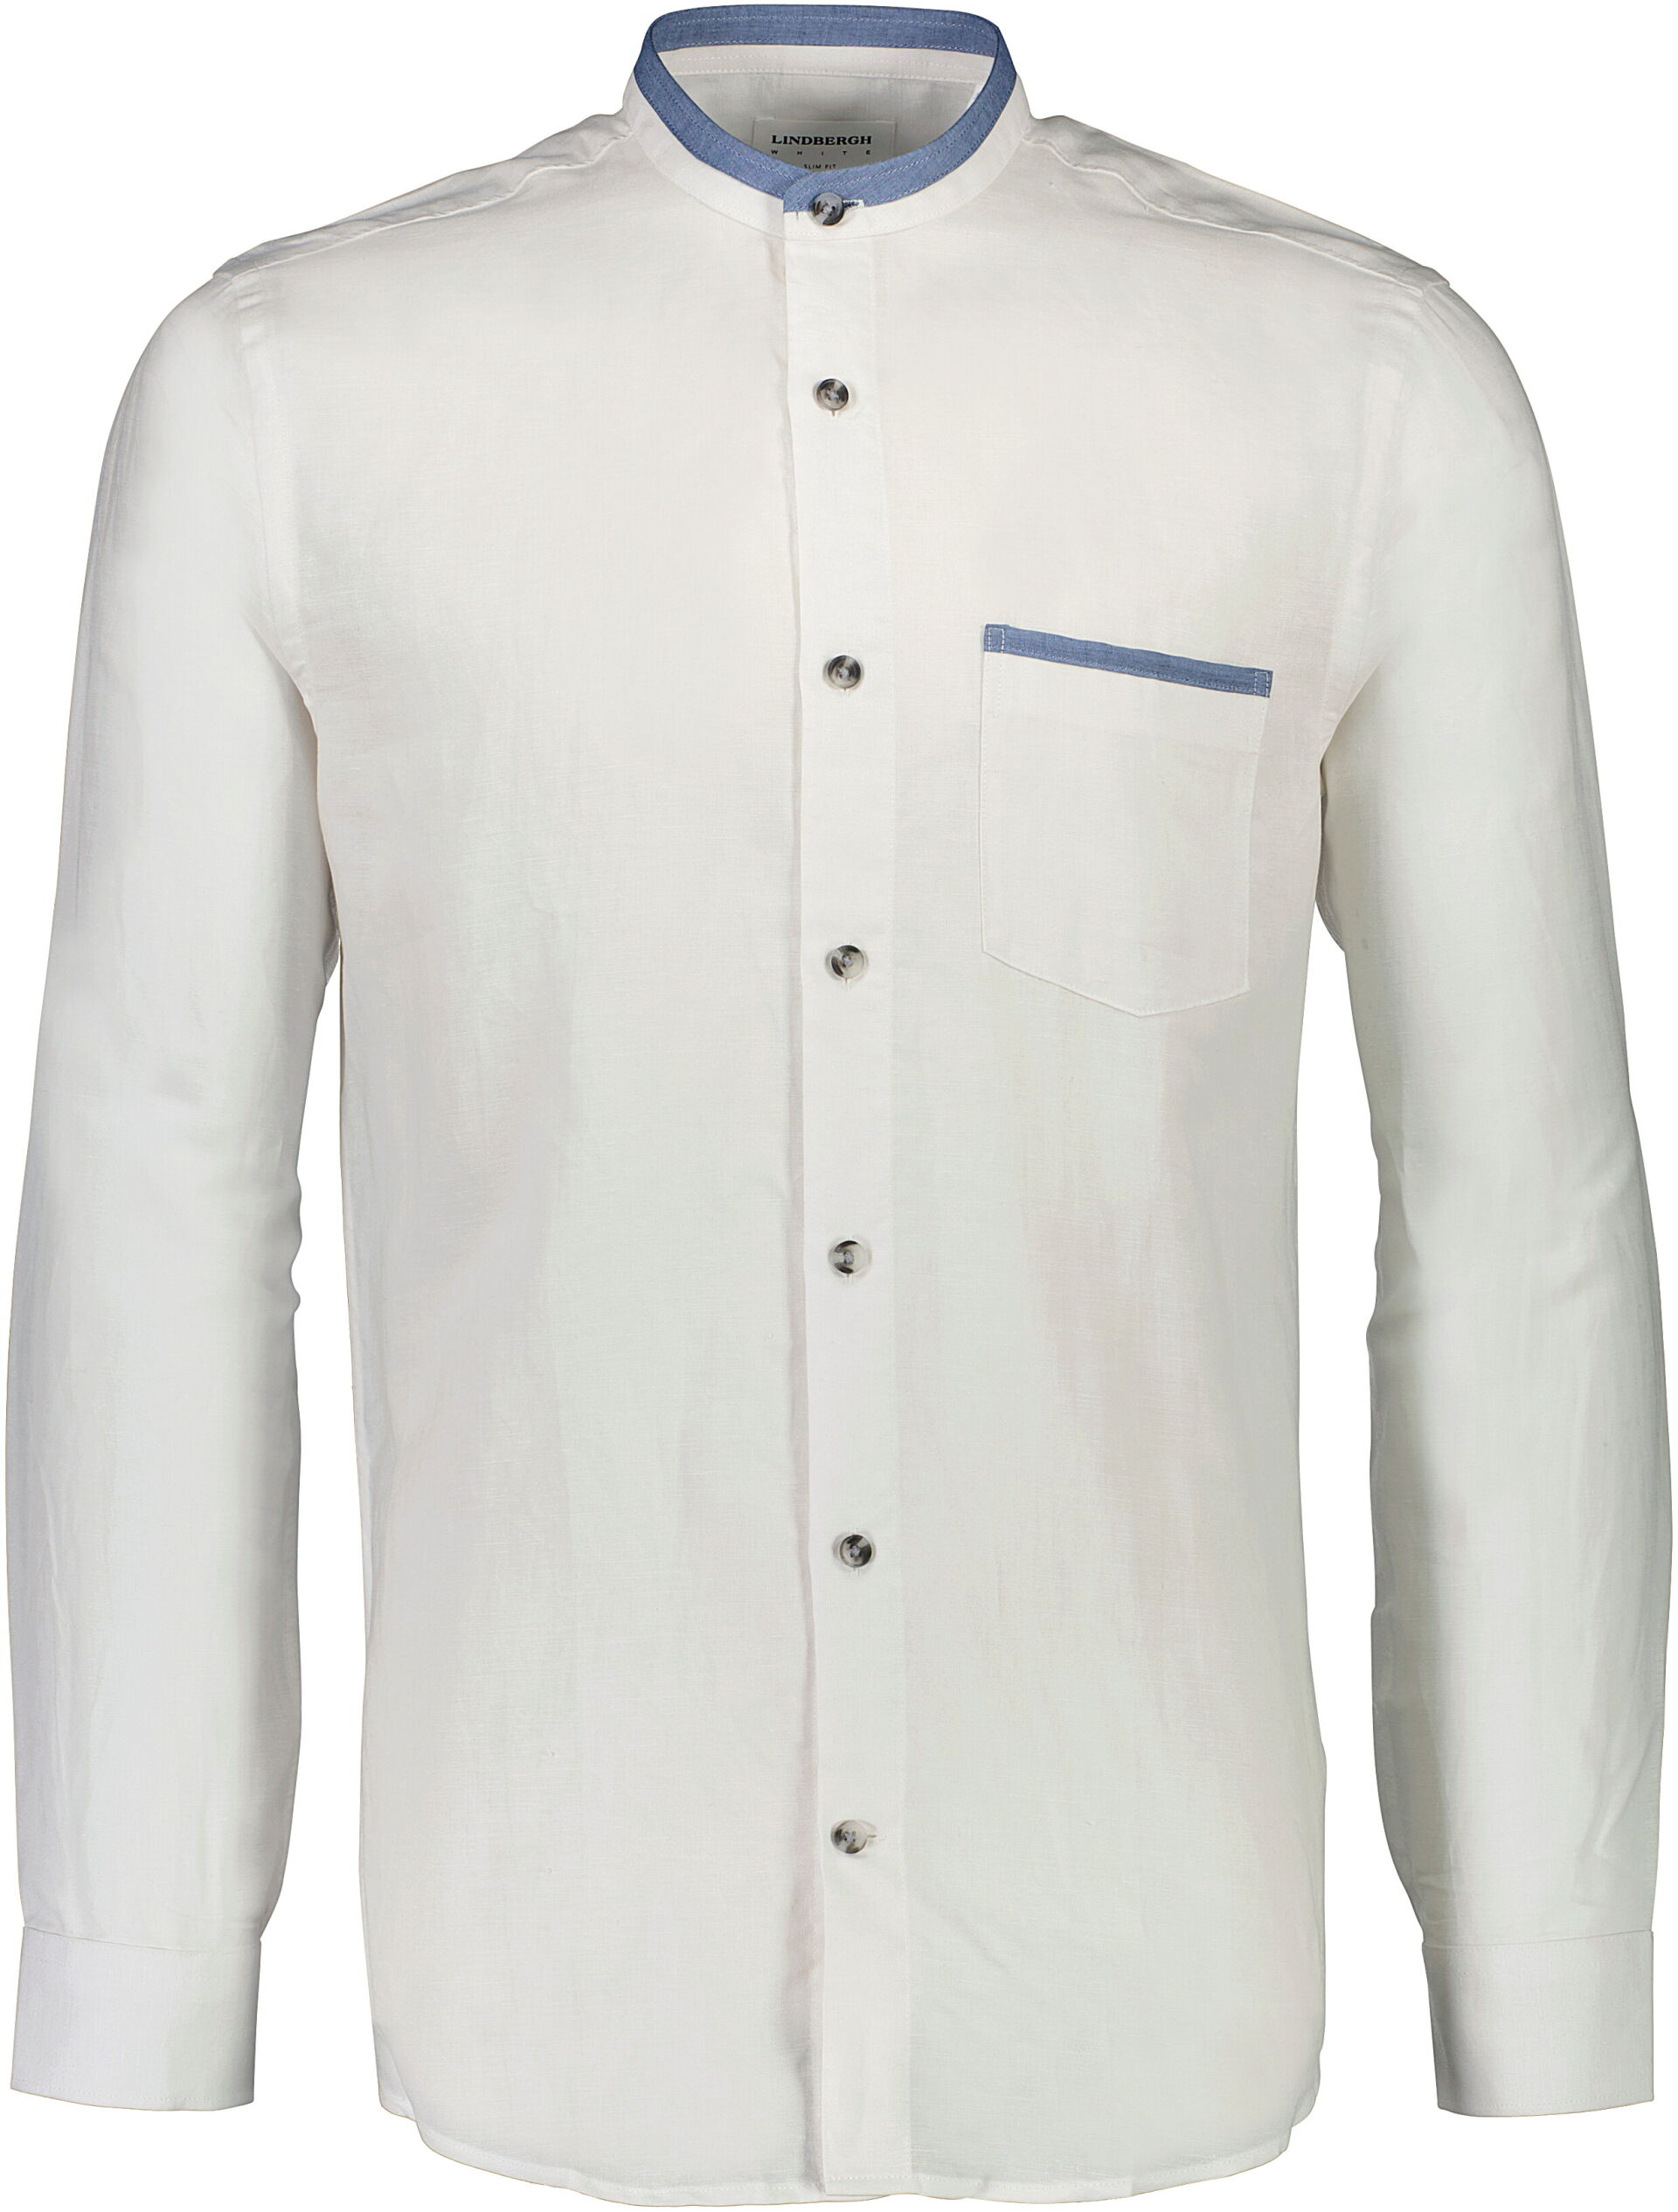 Linen shirt 30-203416